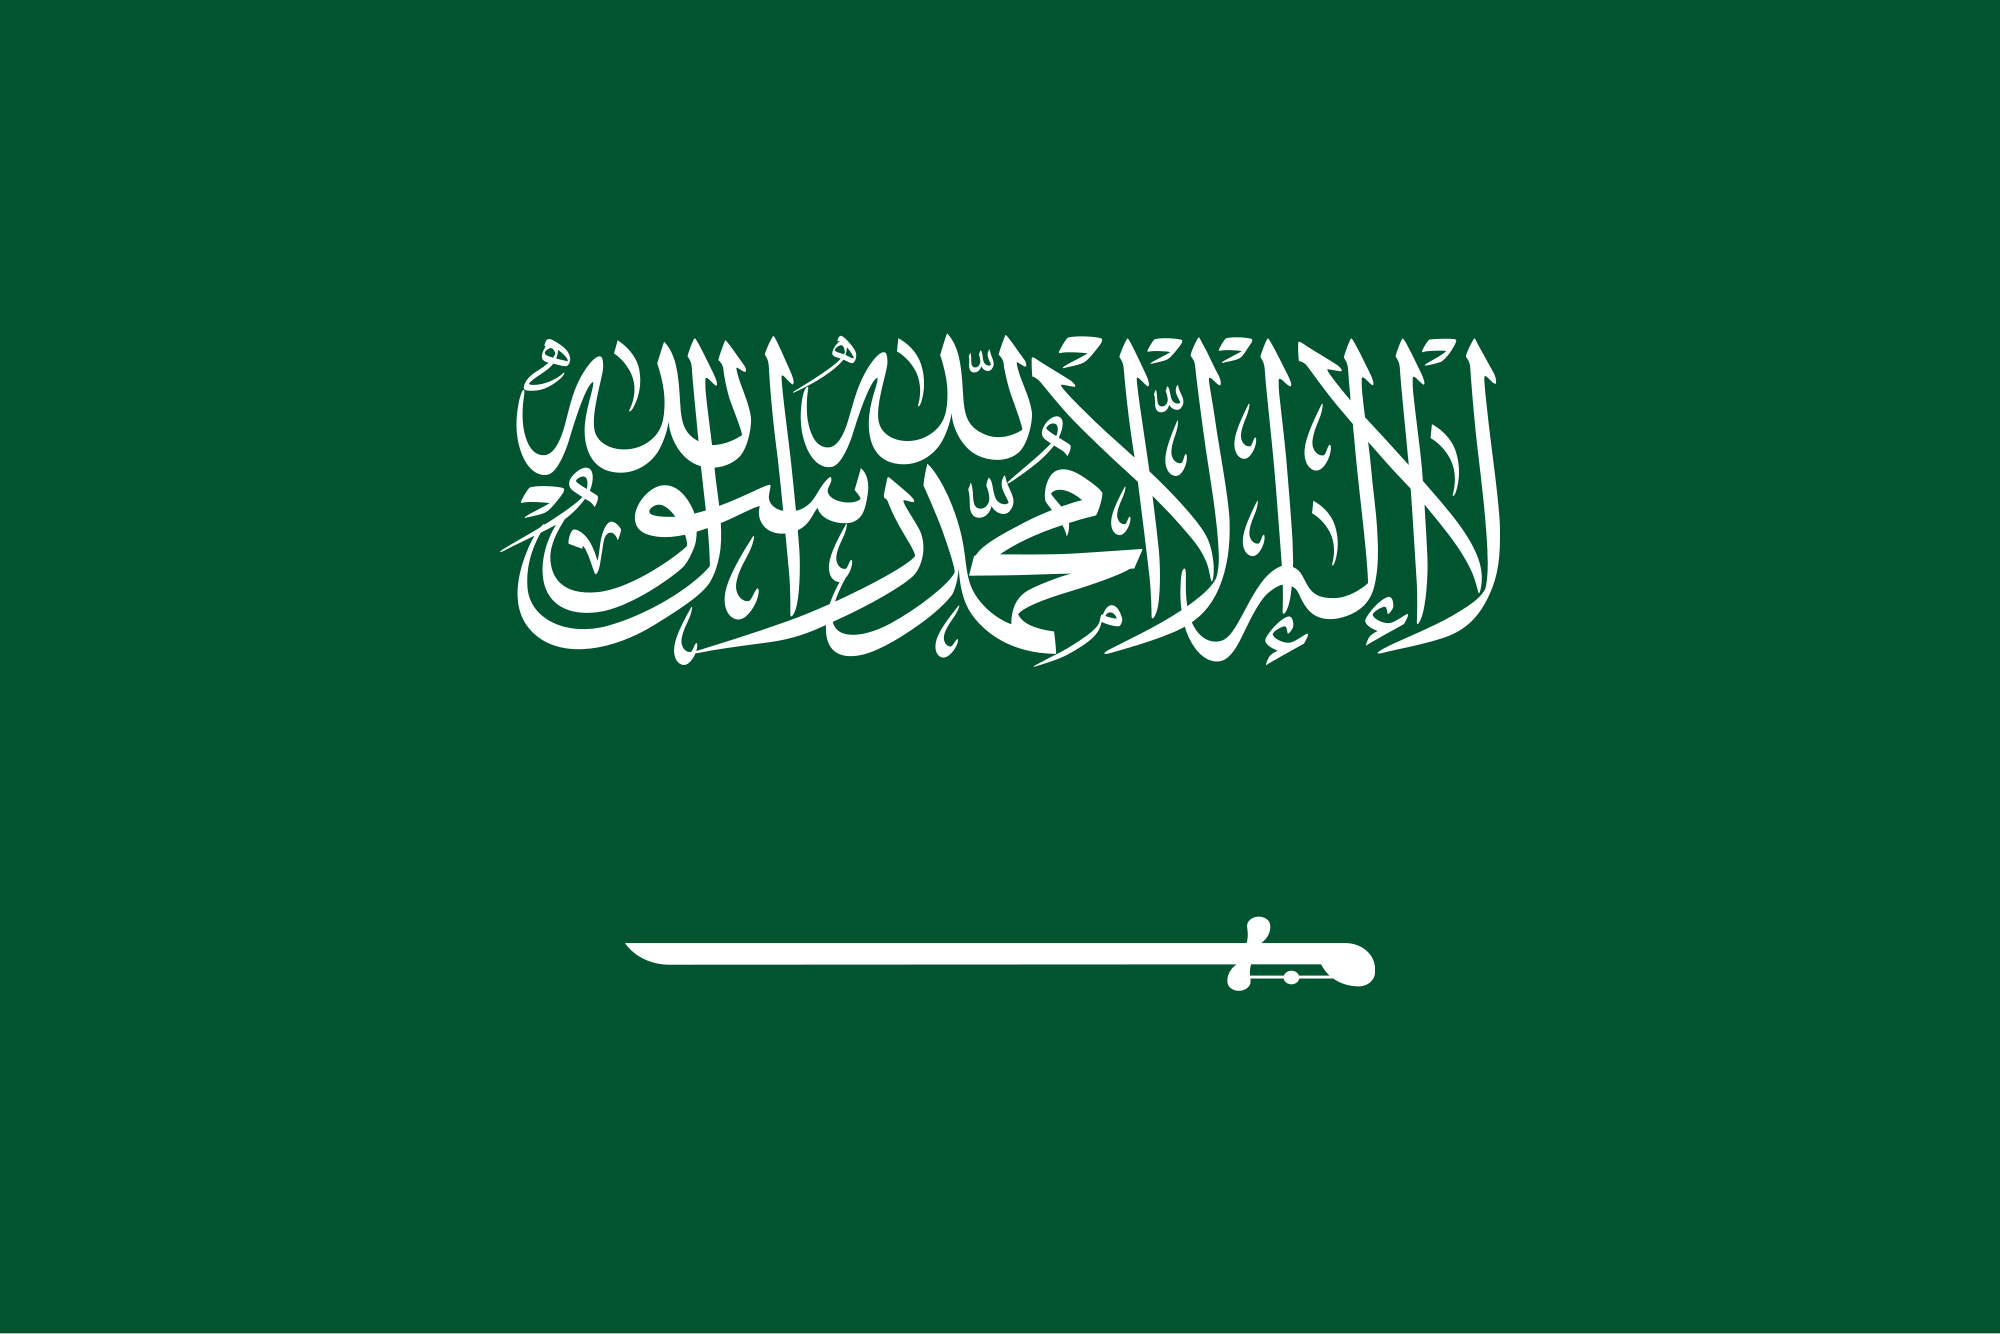 ÐÐ°ÑÑÐ¸Ð½ÐºÐ¸ Ð¿Ð¾ Ð·Ð°Ð¿ÑÐ¾ÑÑ Kingdom of Saudi Arabia flag